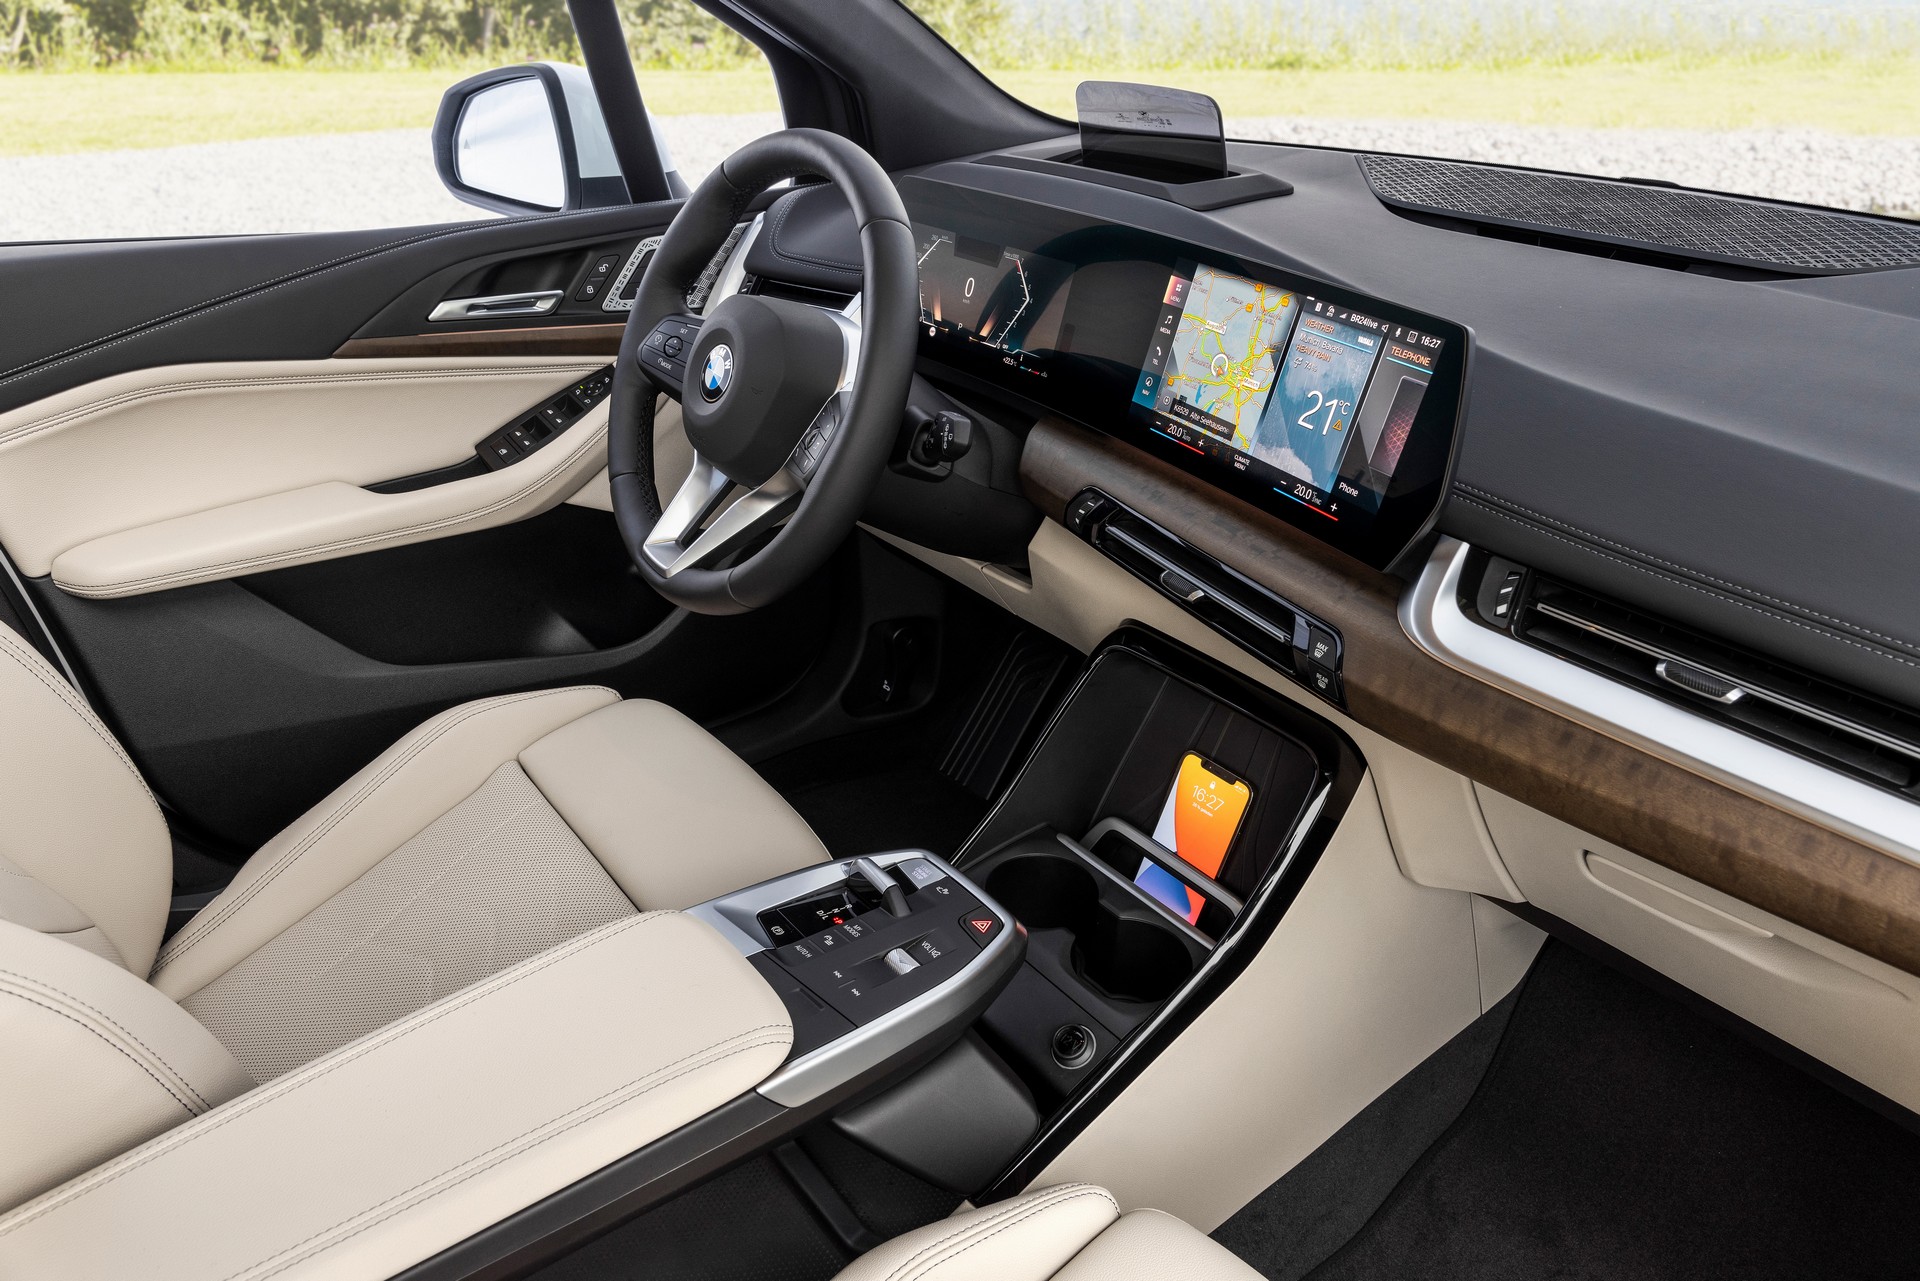 2022 BMW 2 Serisi Active Tourer, yeni teknolojiler ve hibrit versiyonlarla geldi